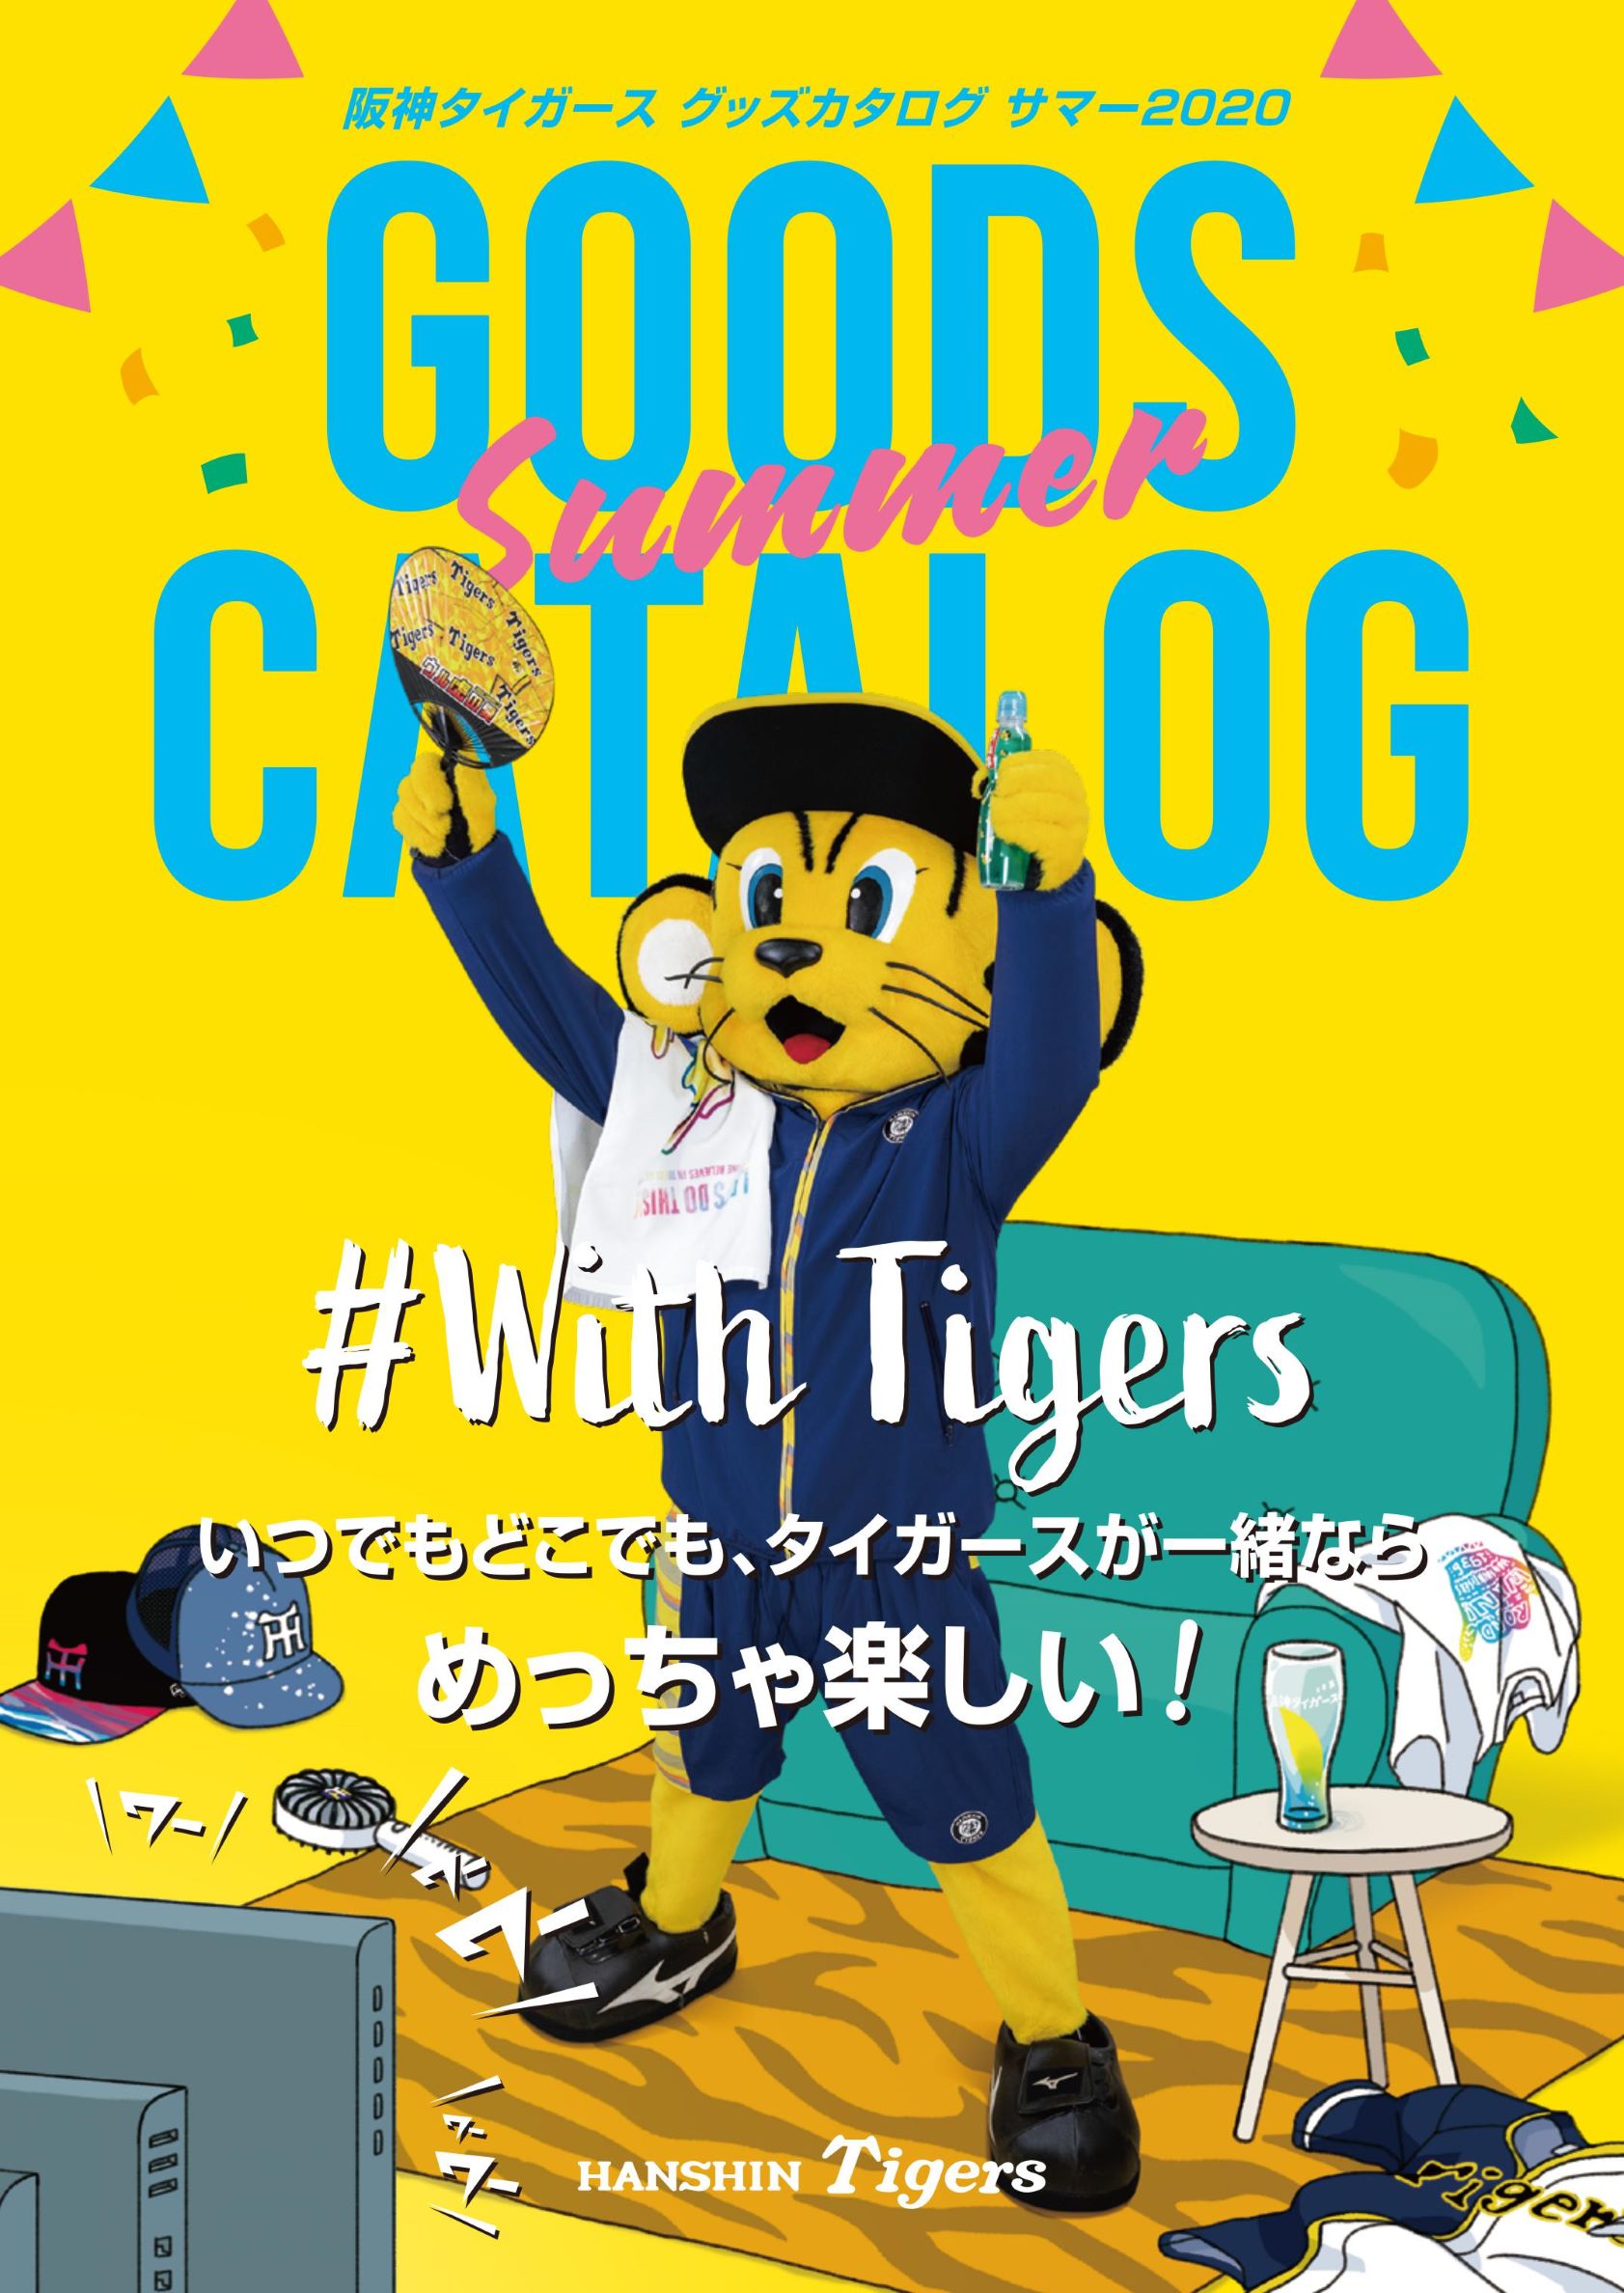 夏を楽しくする 阪神タイガースグッズ が勢ぞろい 6 22 月 発売 阪神タイガースのプレスリリース